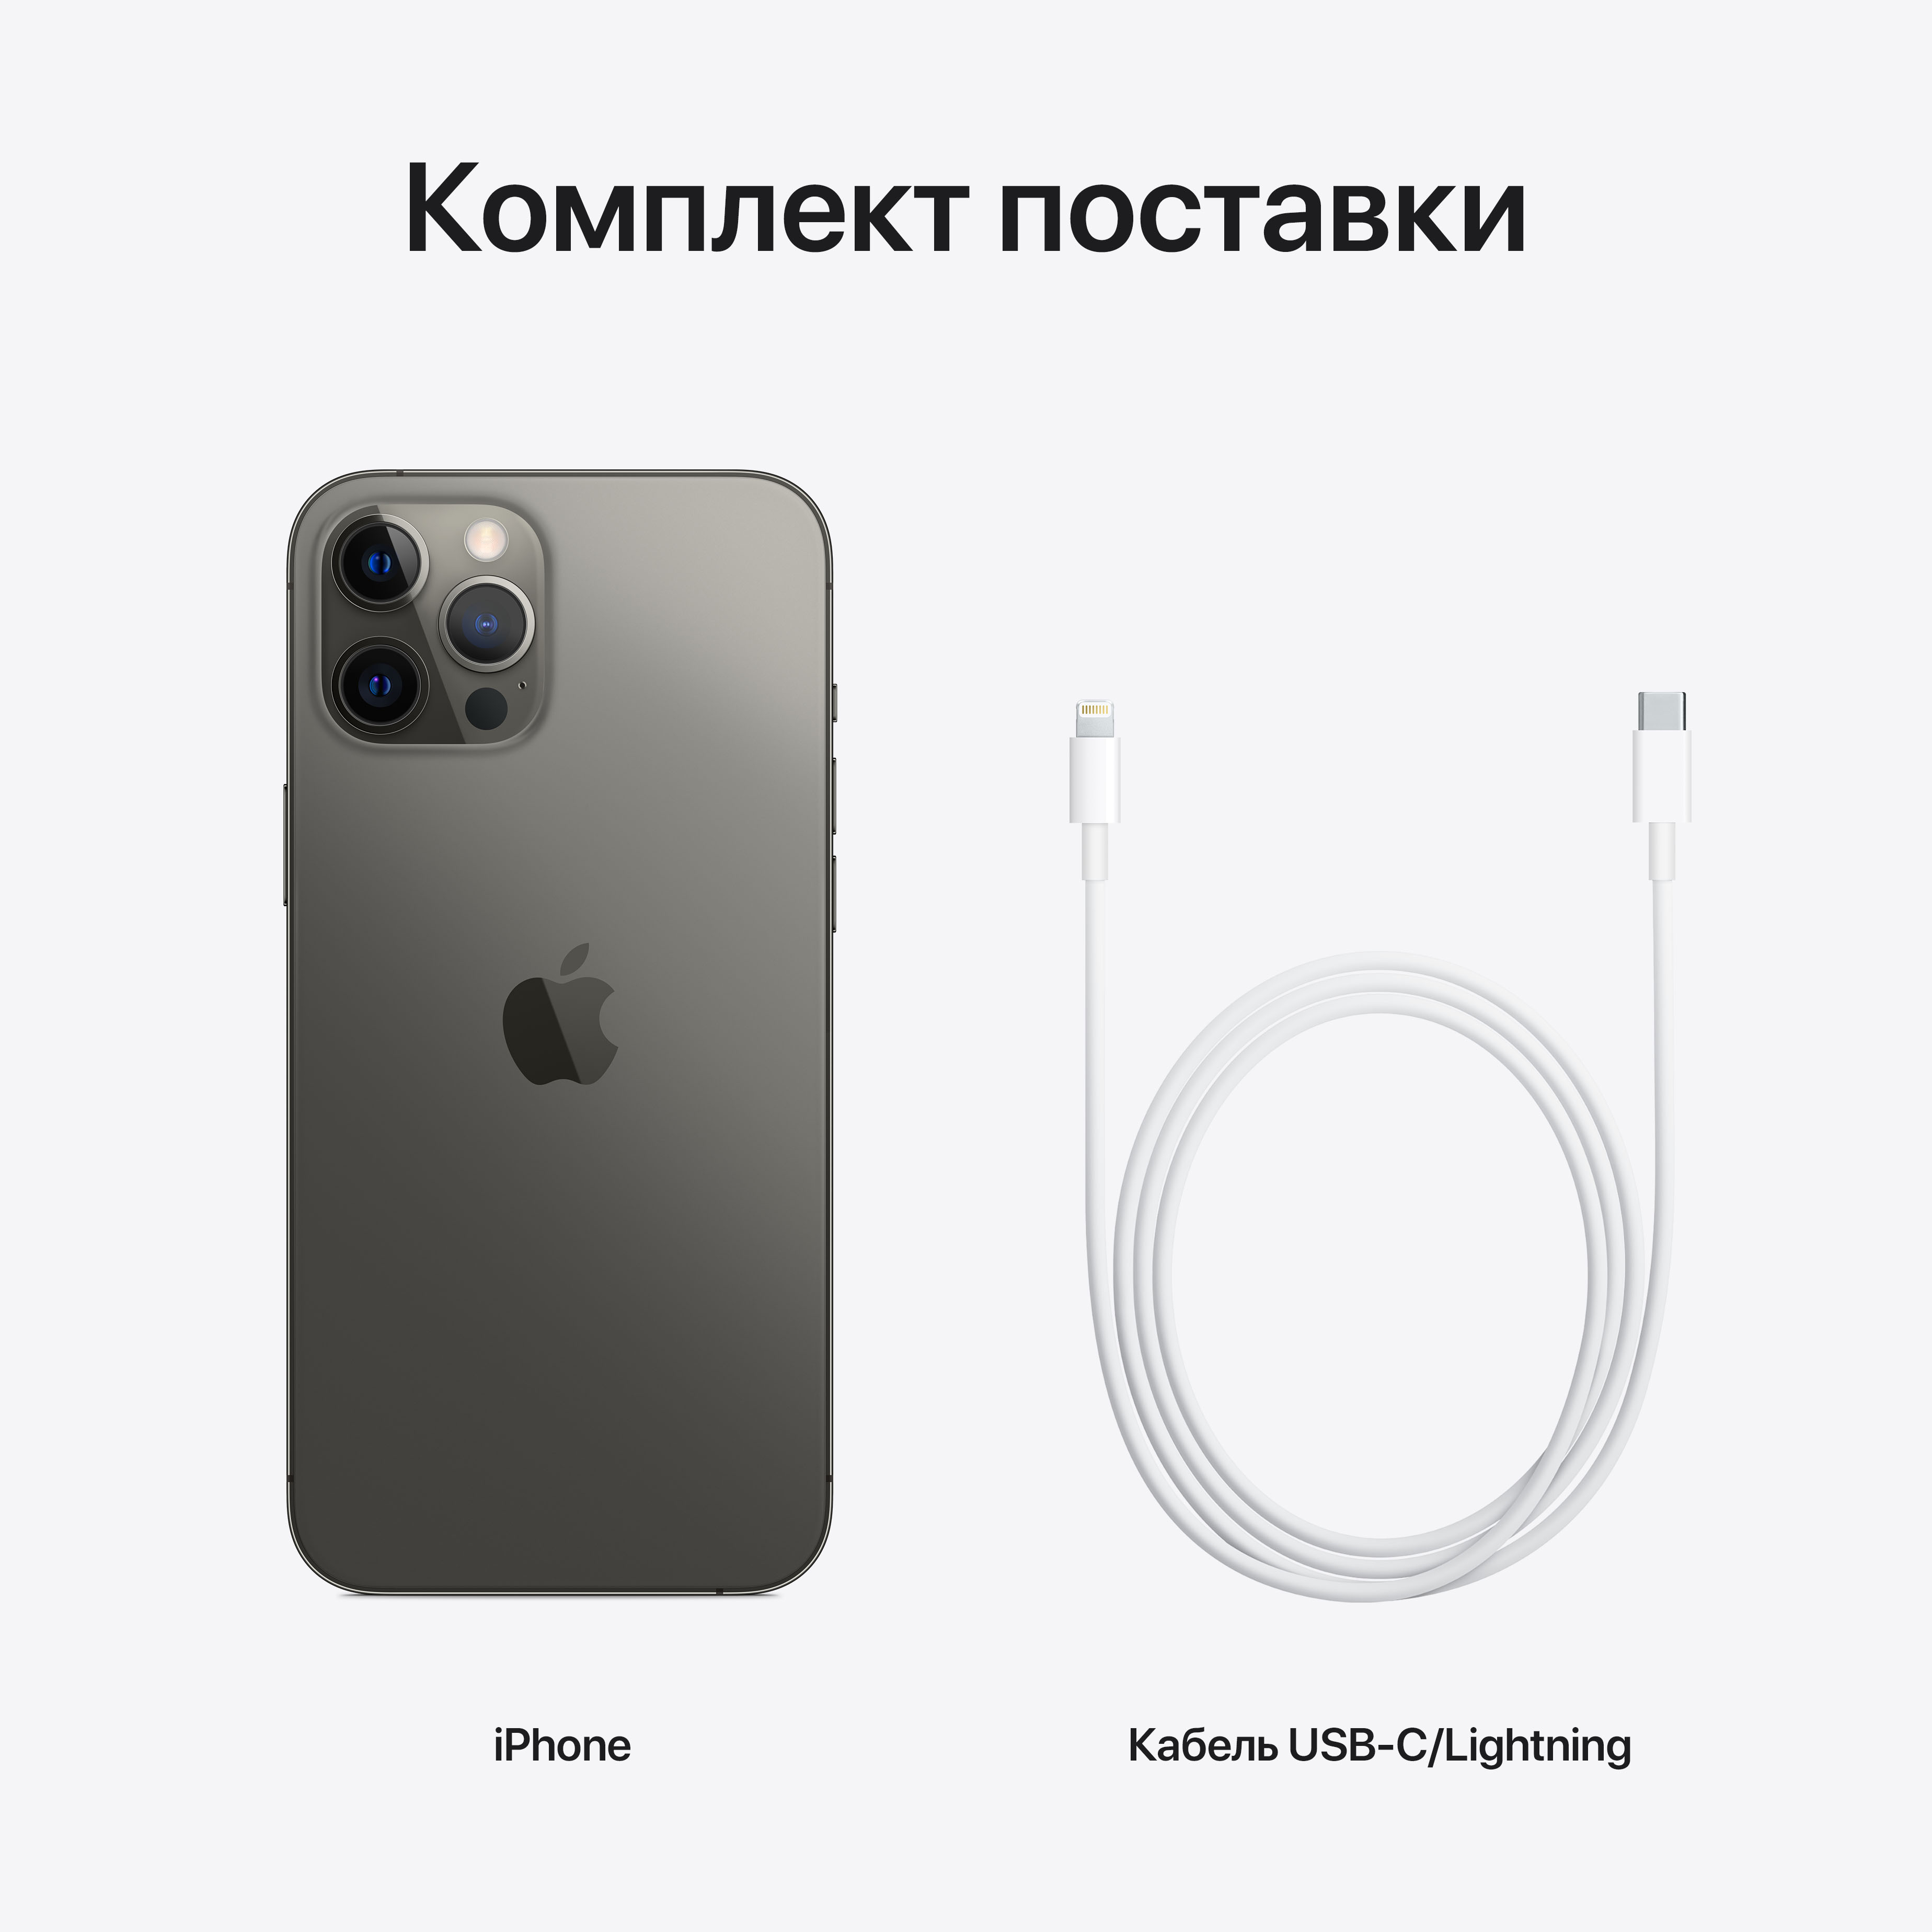 Фото — Apple iPhone 12 Pro Max, 512 ГБ, графитовый